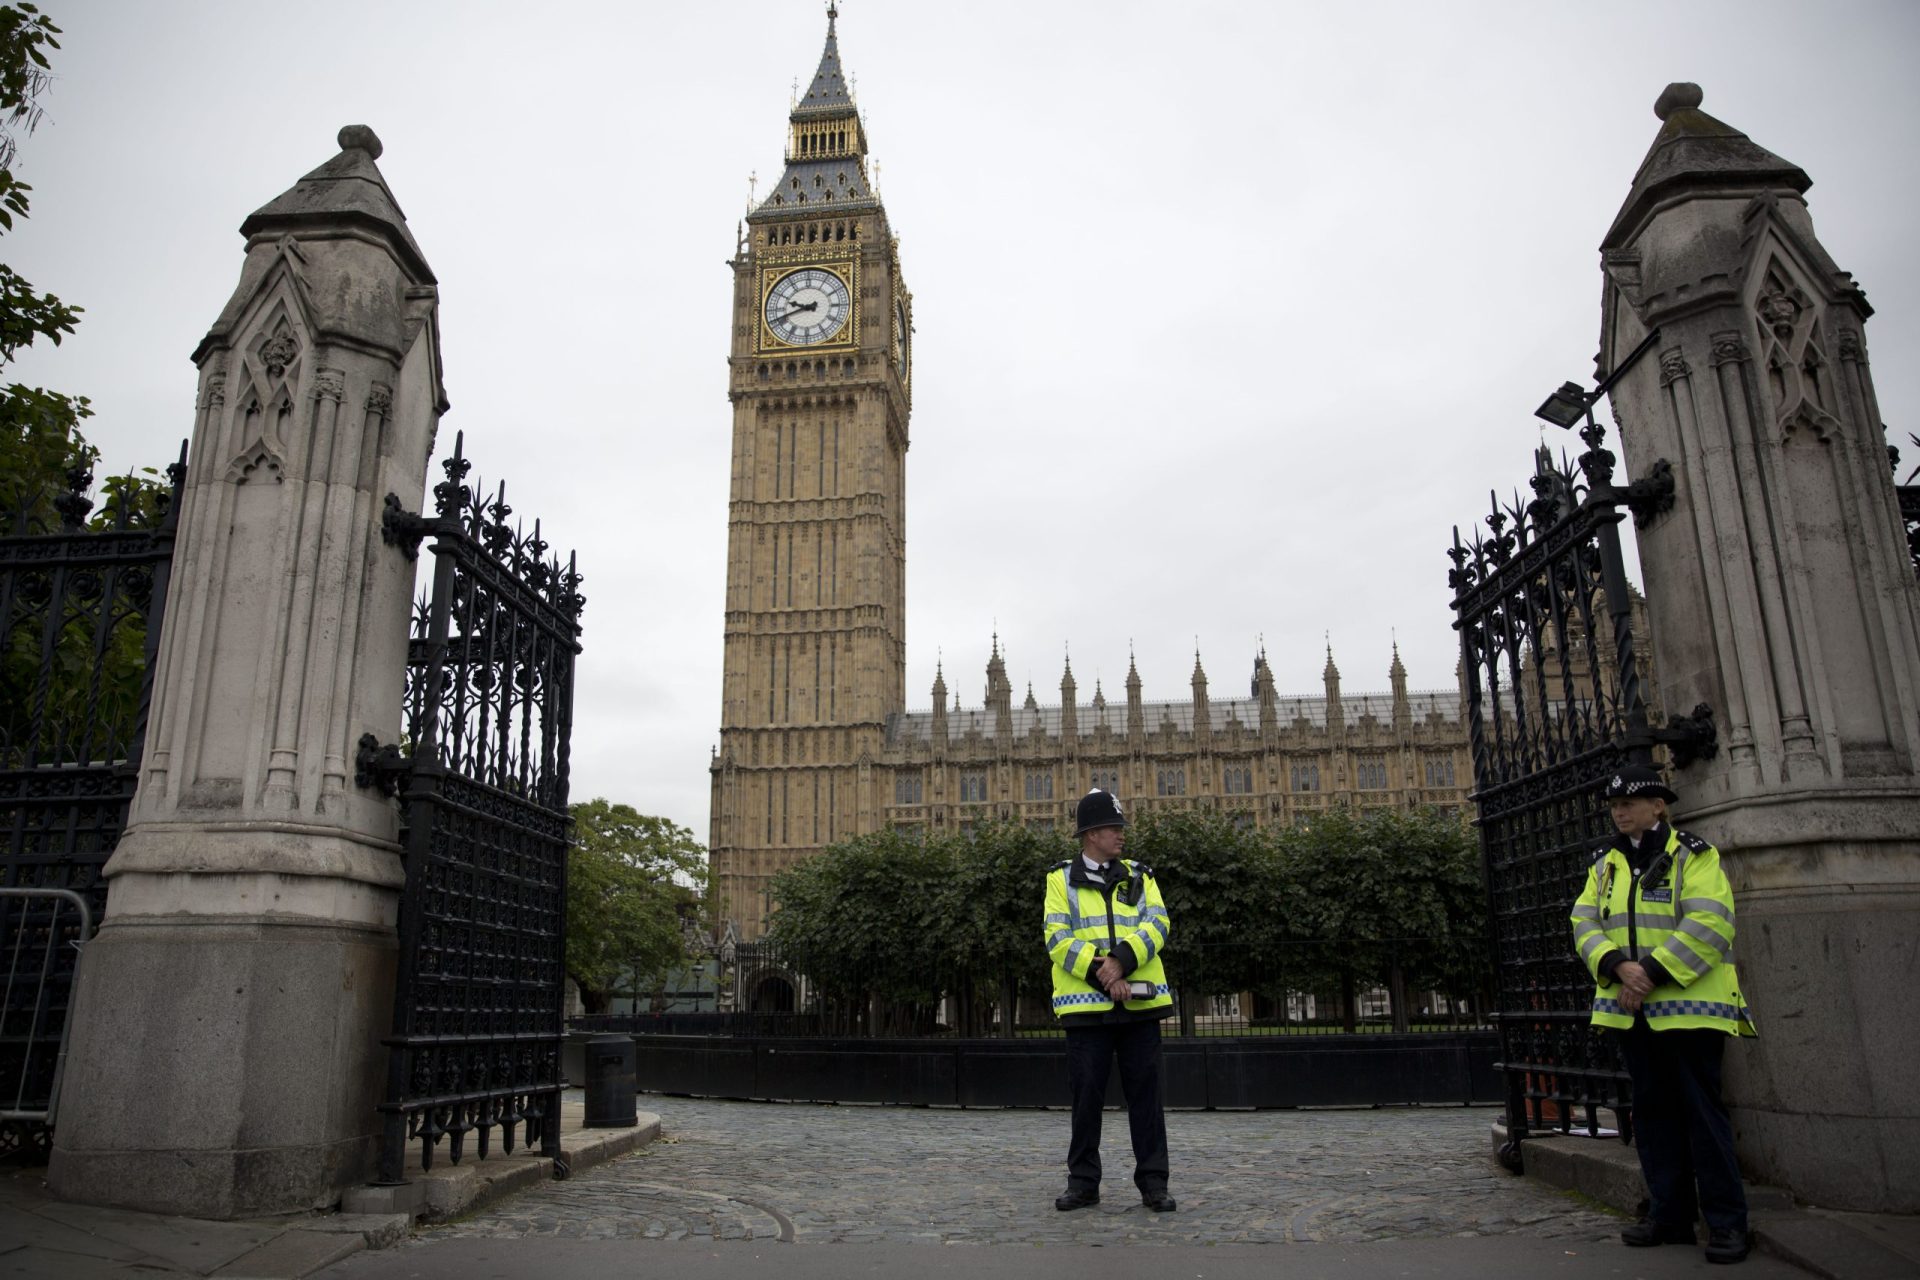 Ameaça ‘jihadista’ deixa Reino Unido em alerta